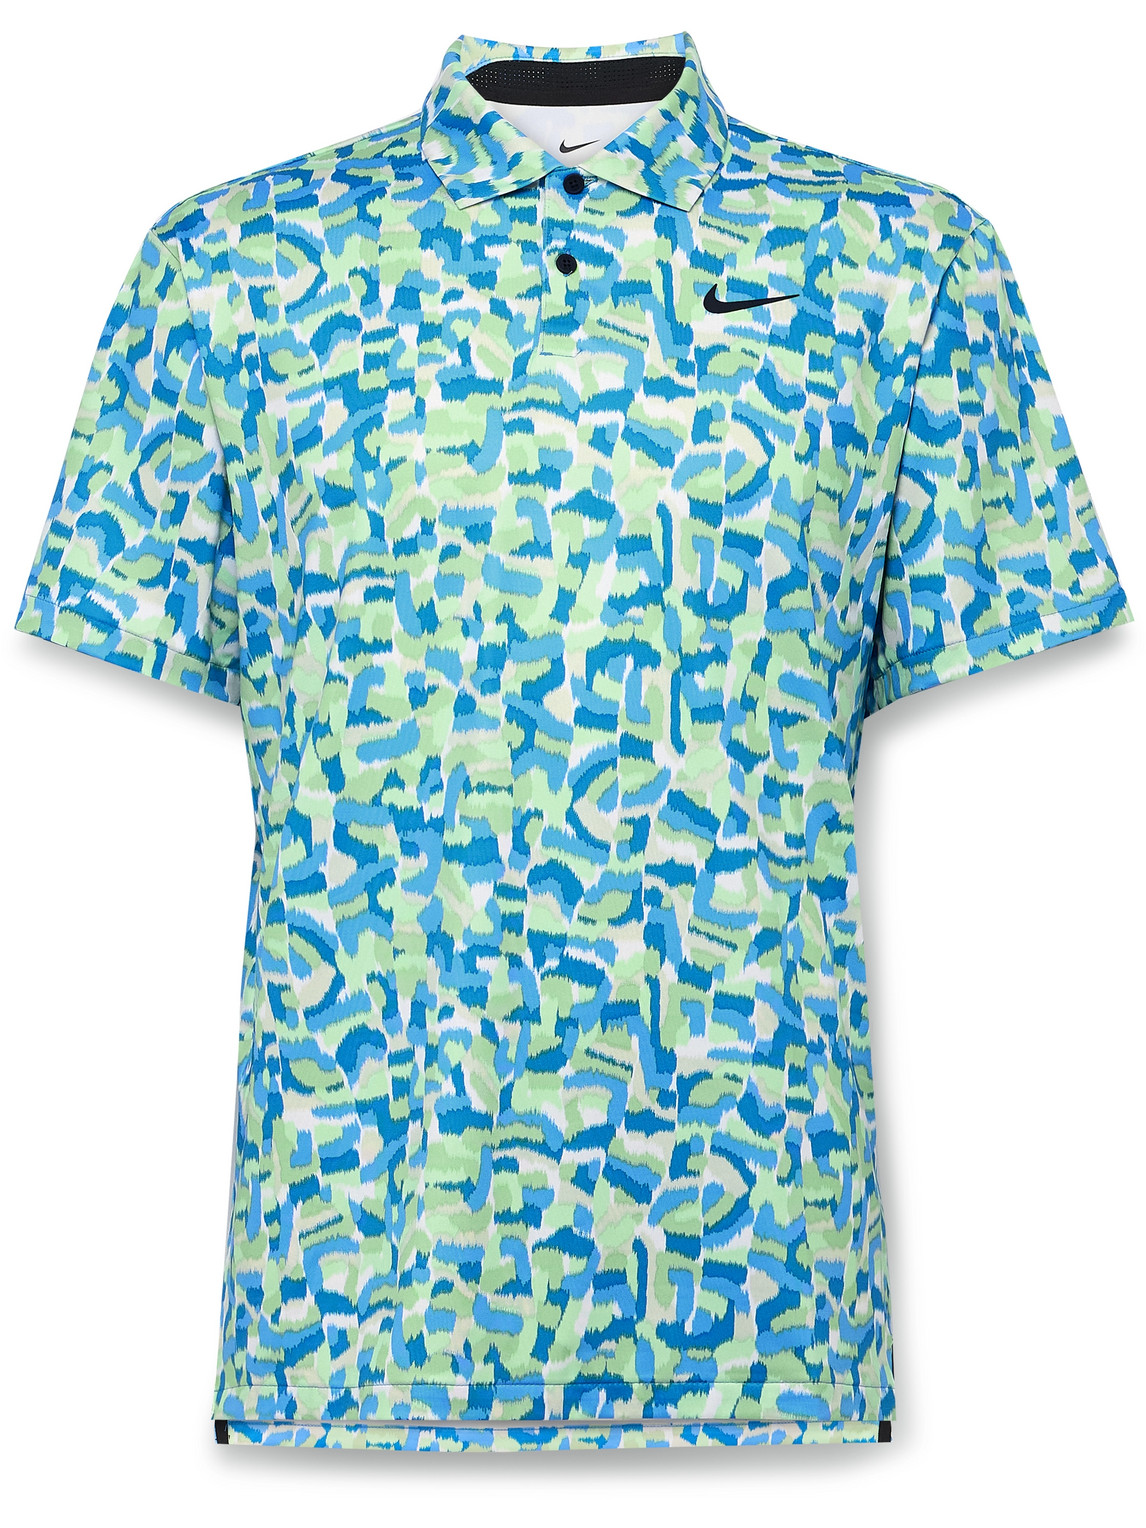 Tour Printed Dri-FIT Golf Polo Shirt